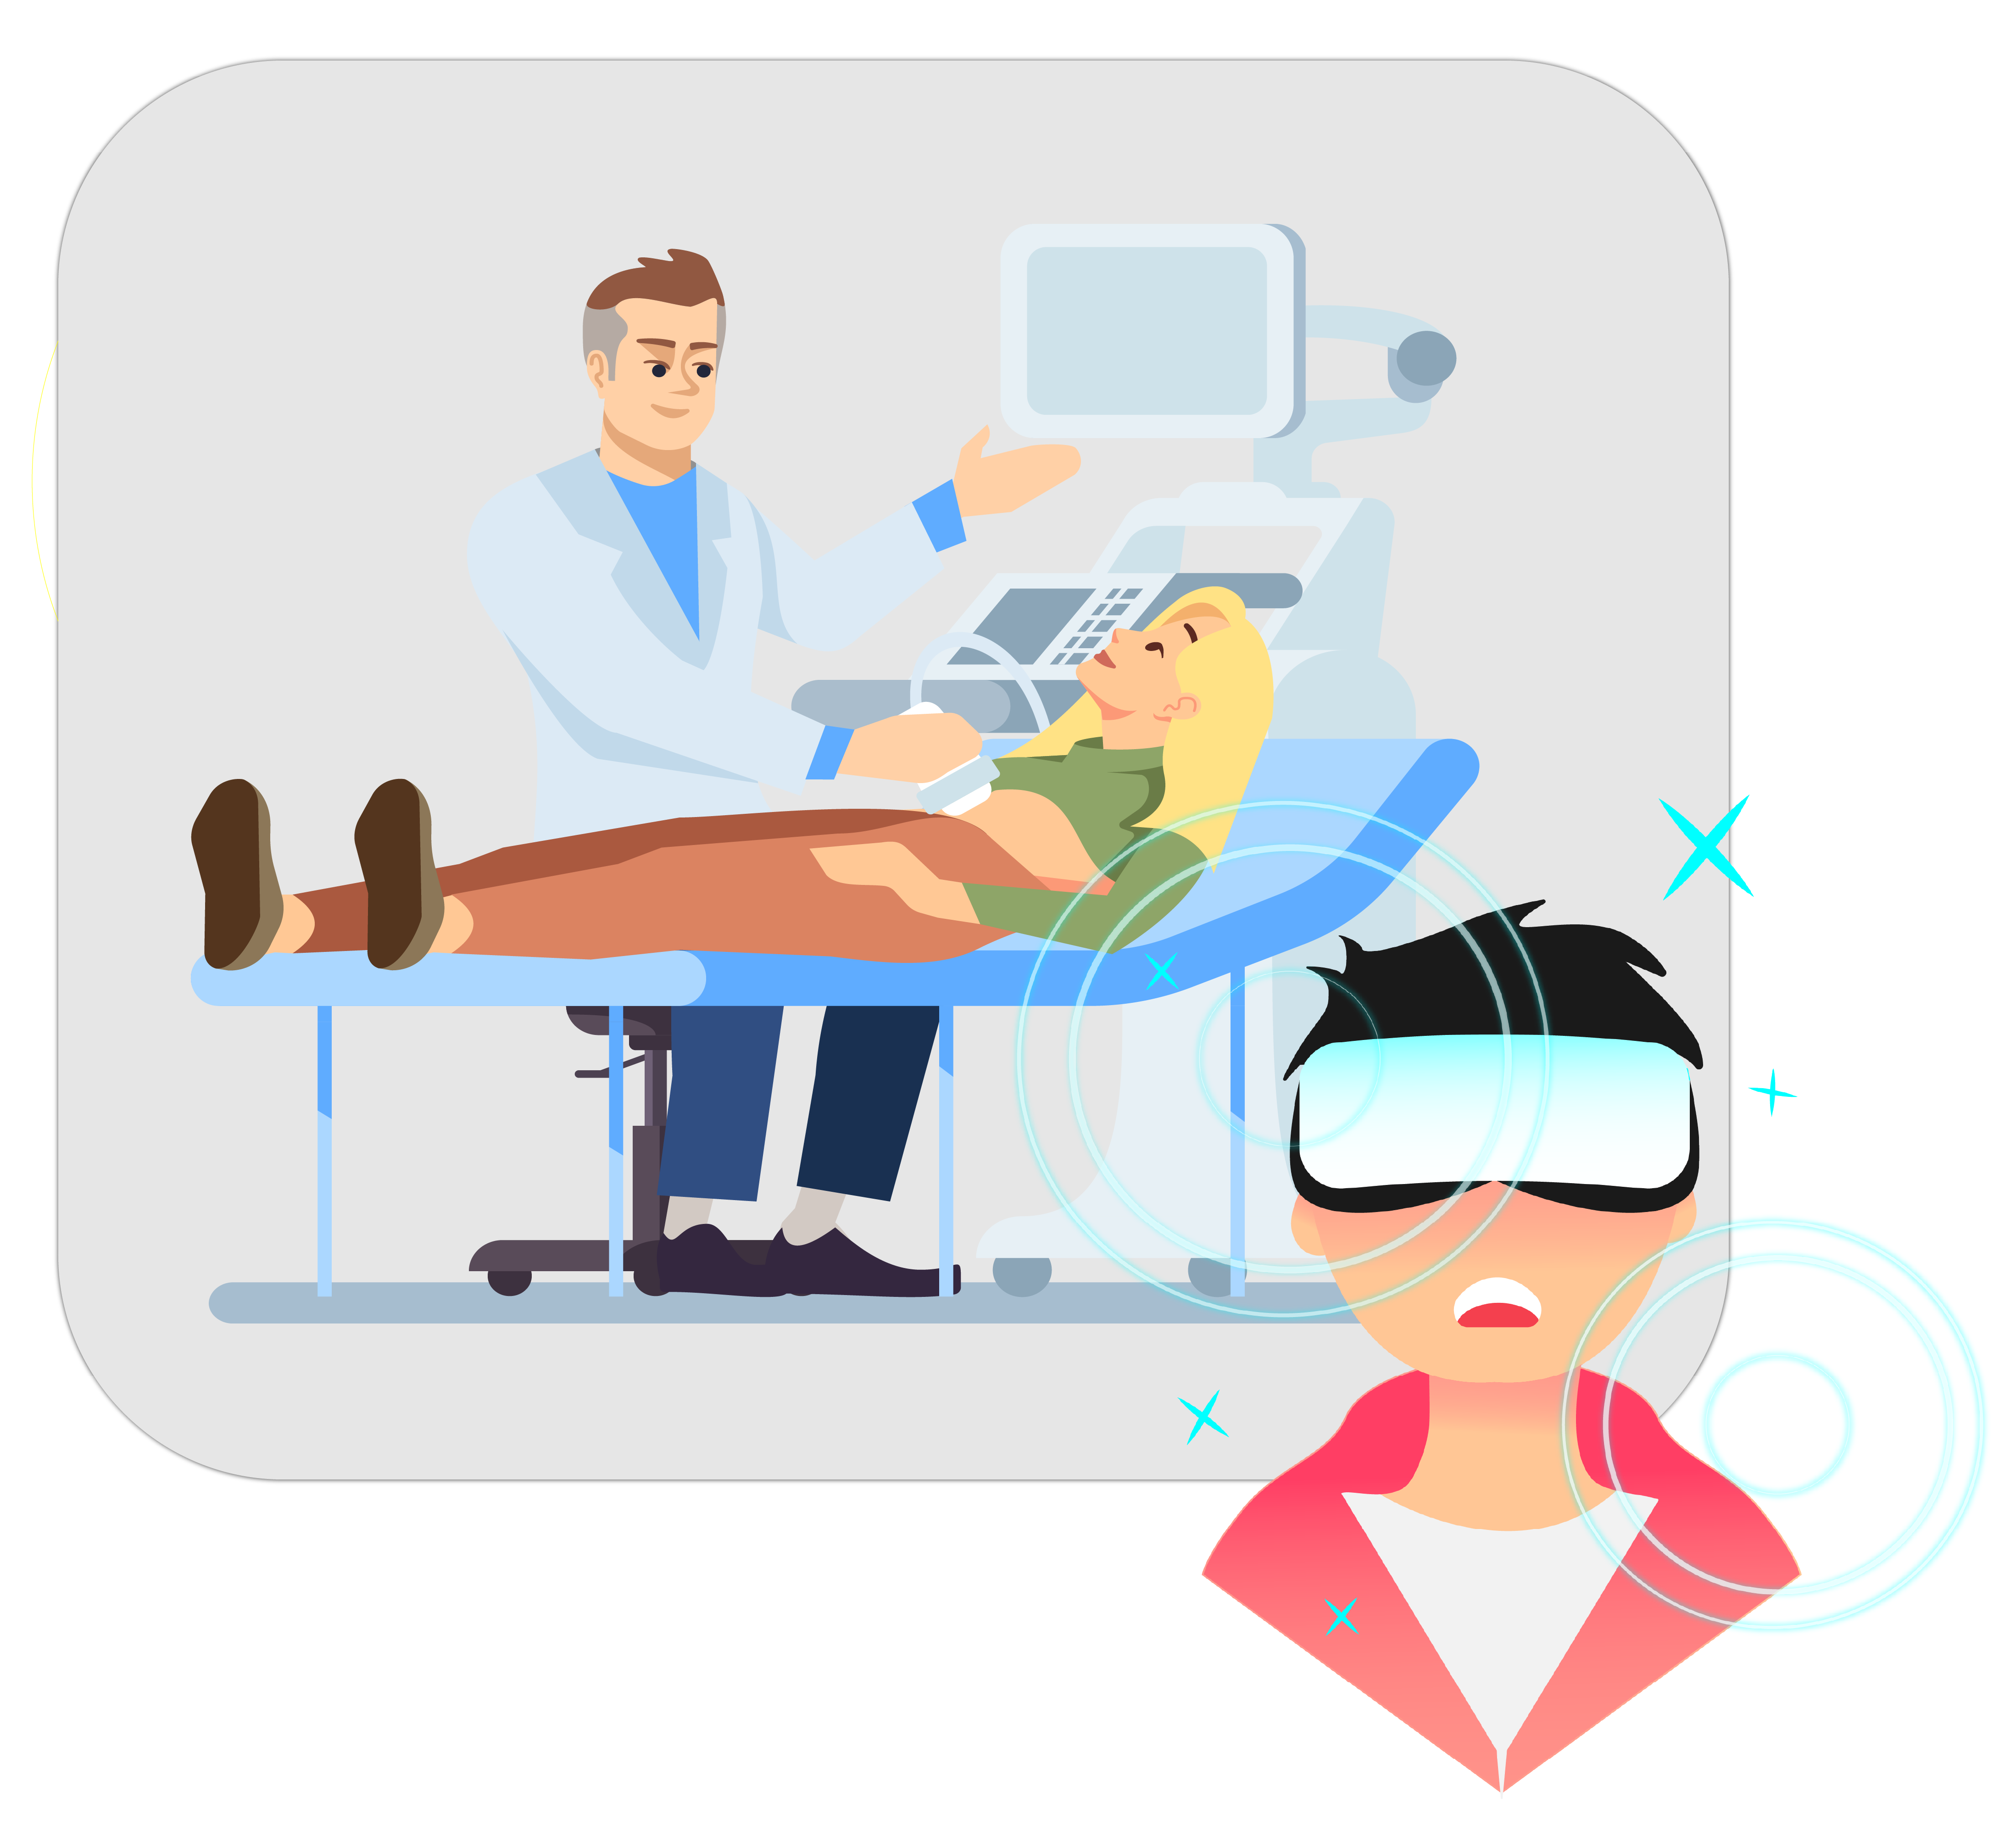 運用VR技術於醫療儀器學習之專案開發